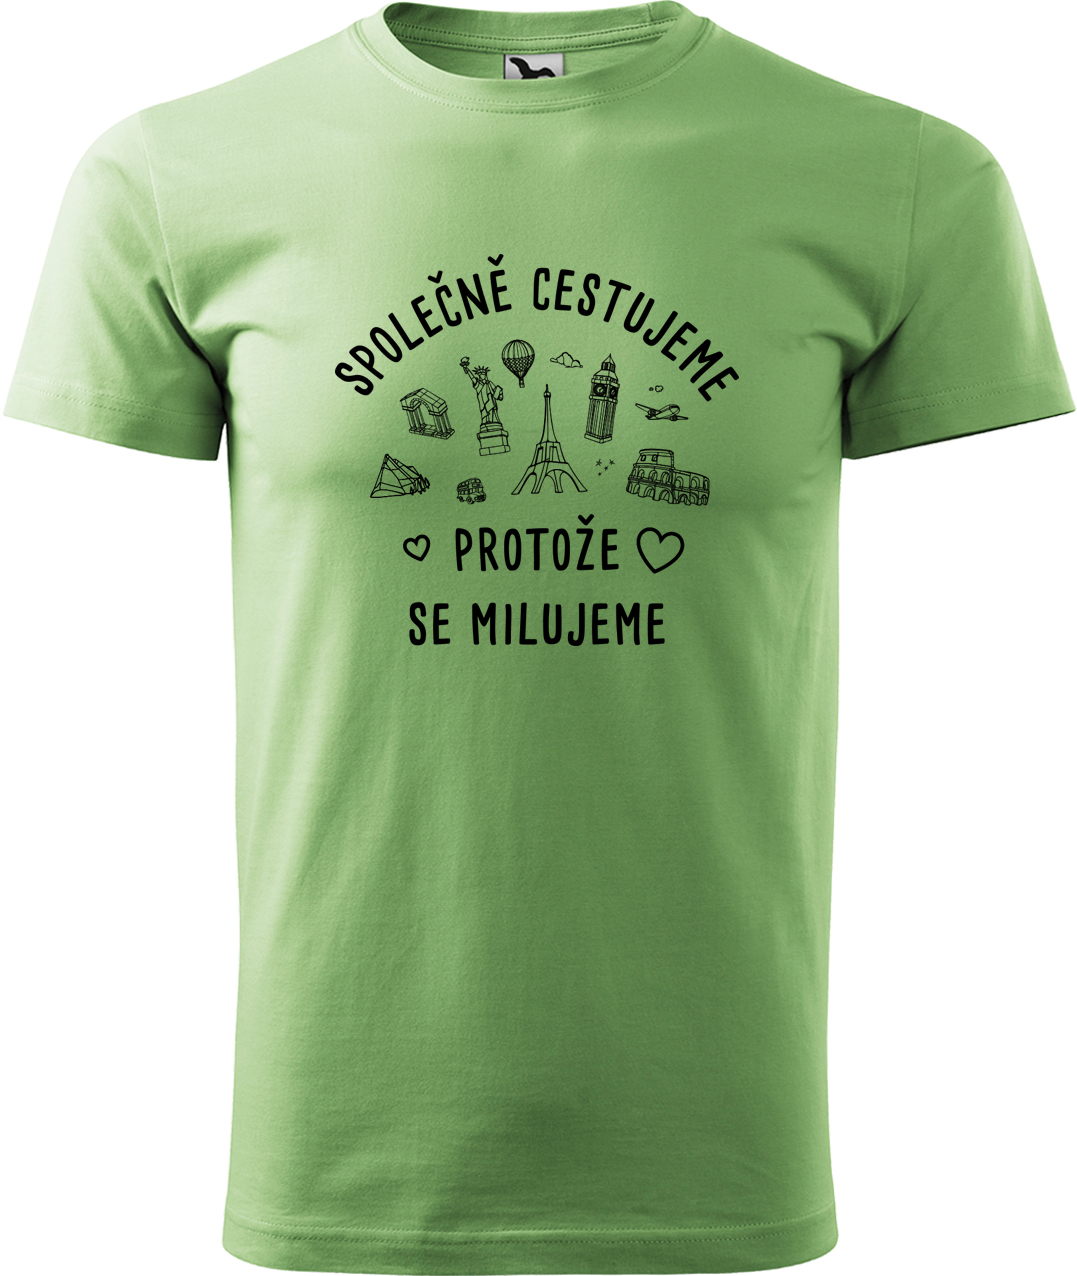 Pánské cestovatelské tričko - Společně cestujeme protože se milujeme Velikost: 3XL, Barva: Trávově zelená (39), Střih: pánský